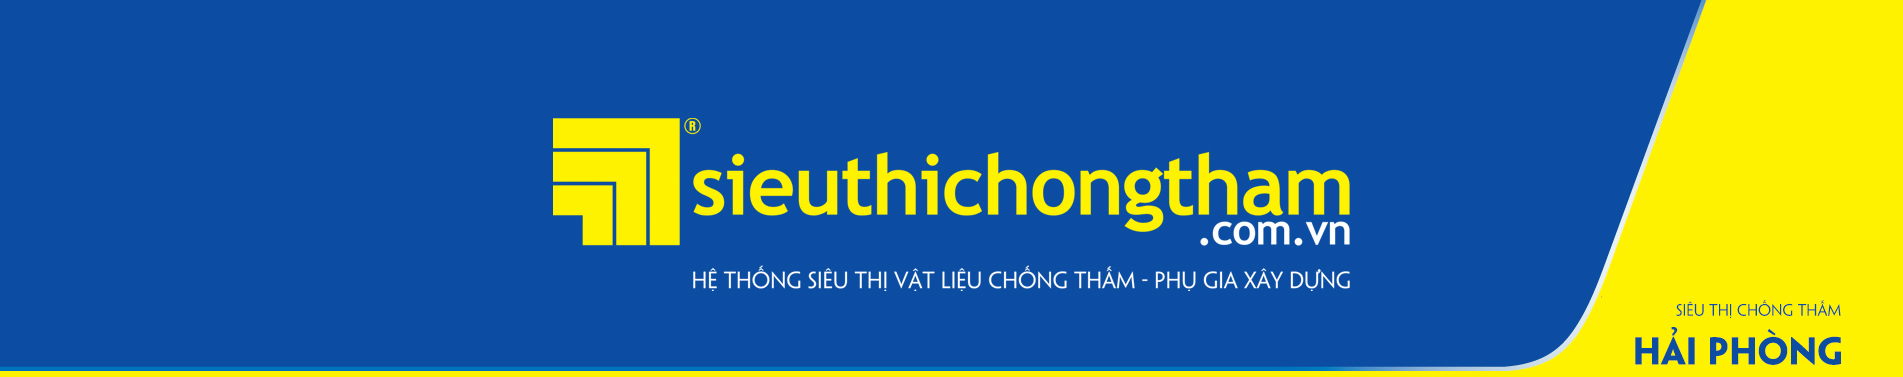 Sieu Thi Chong HAI PHONG